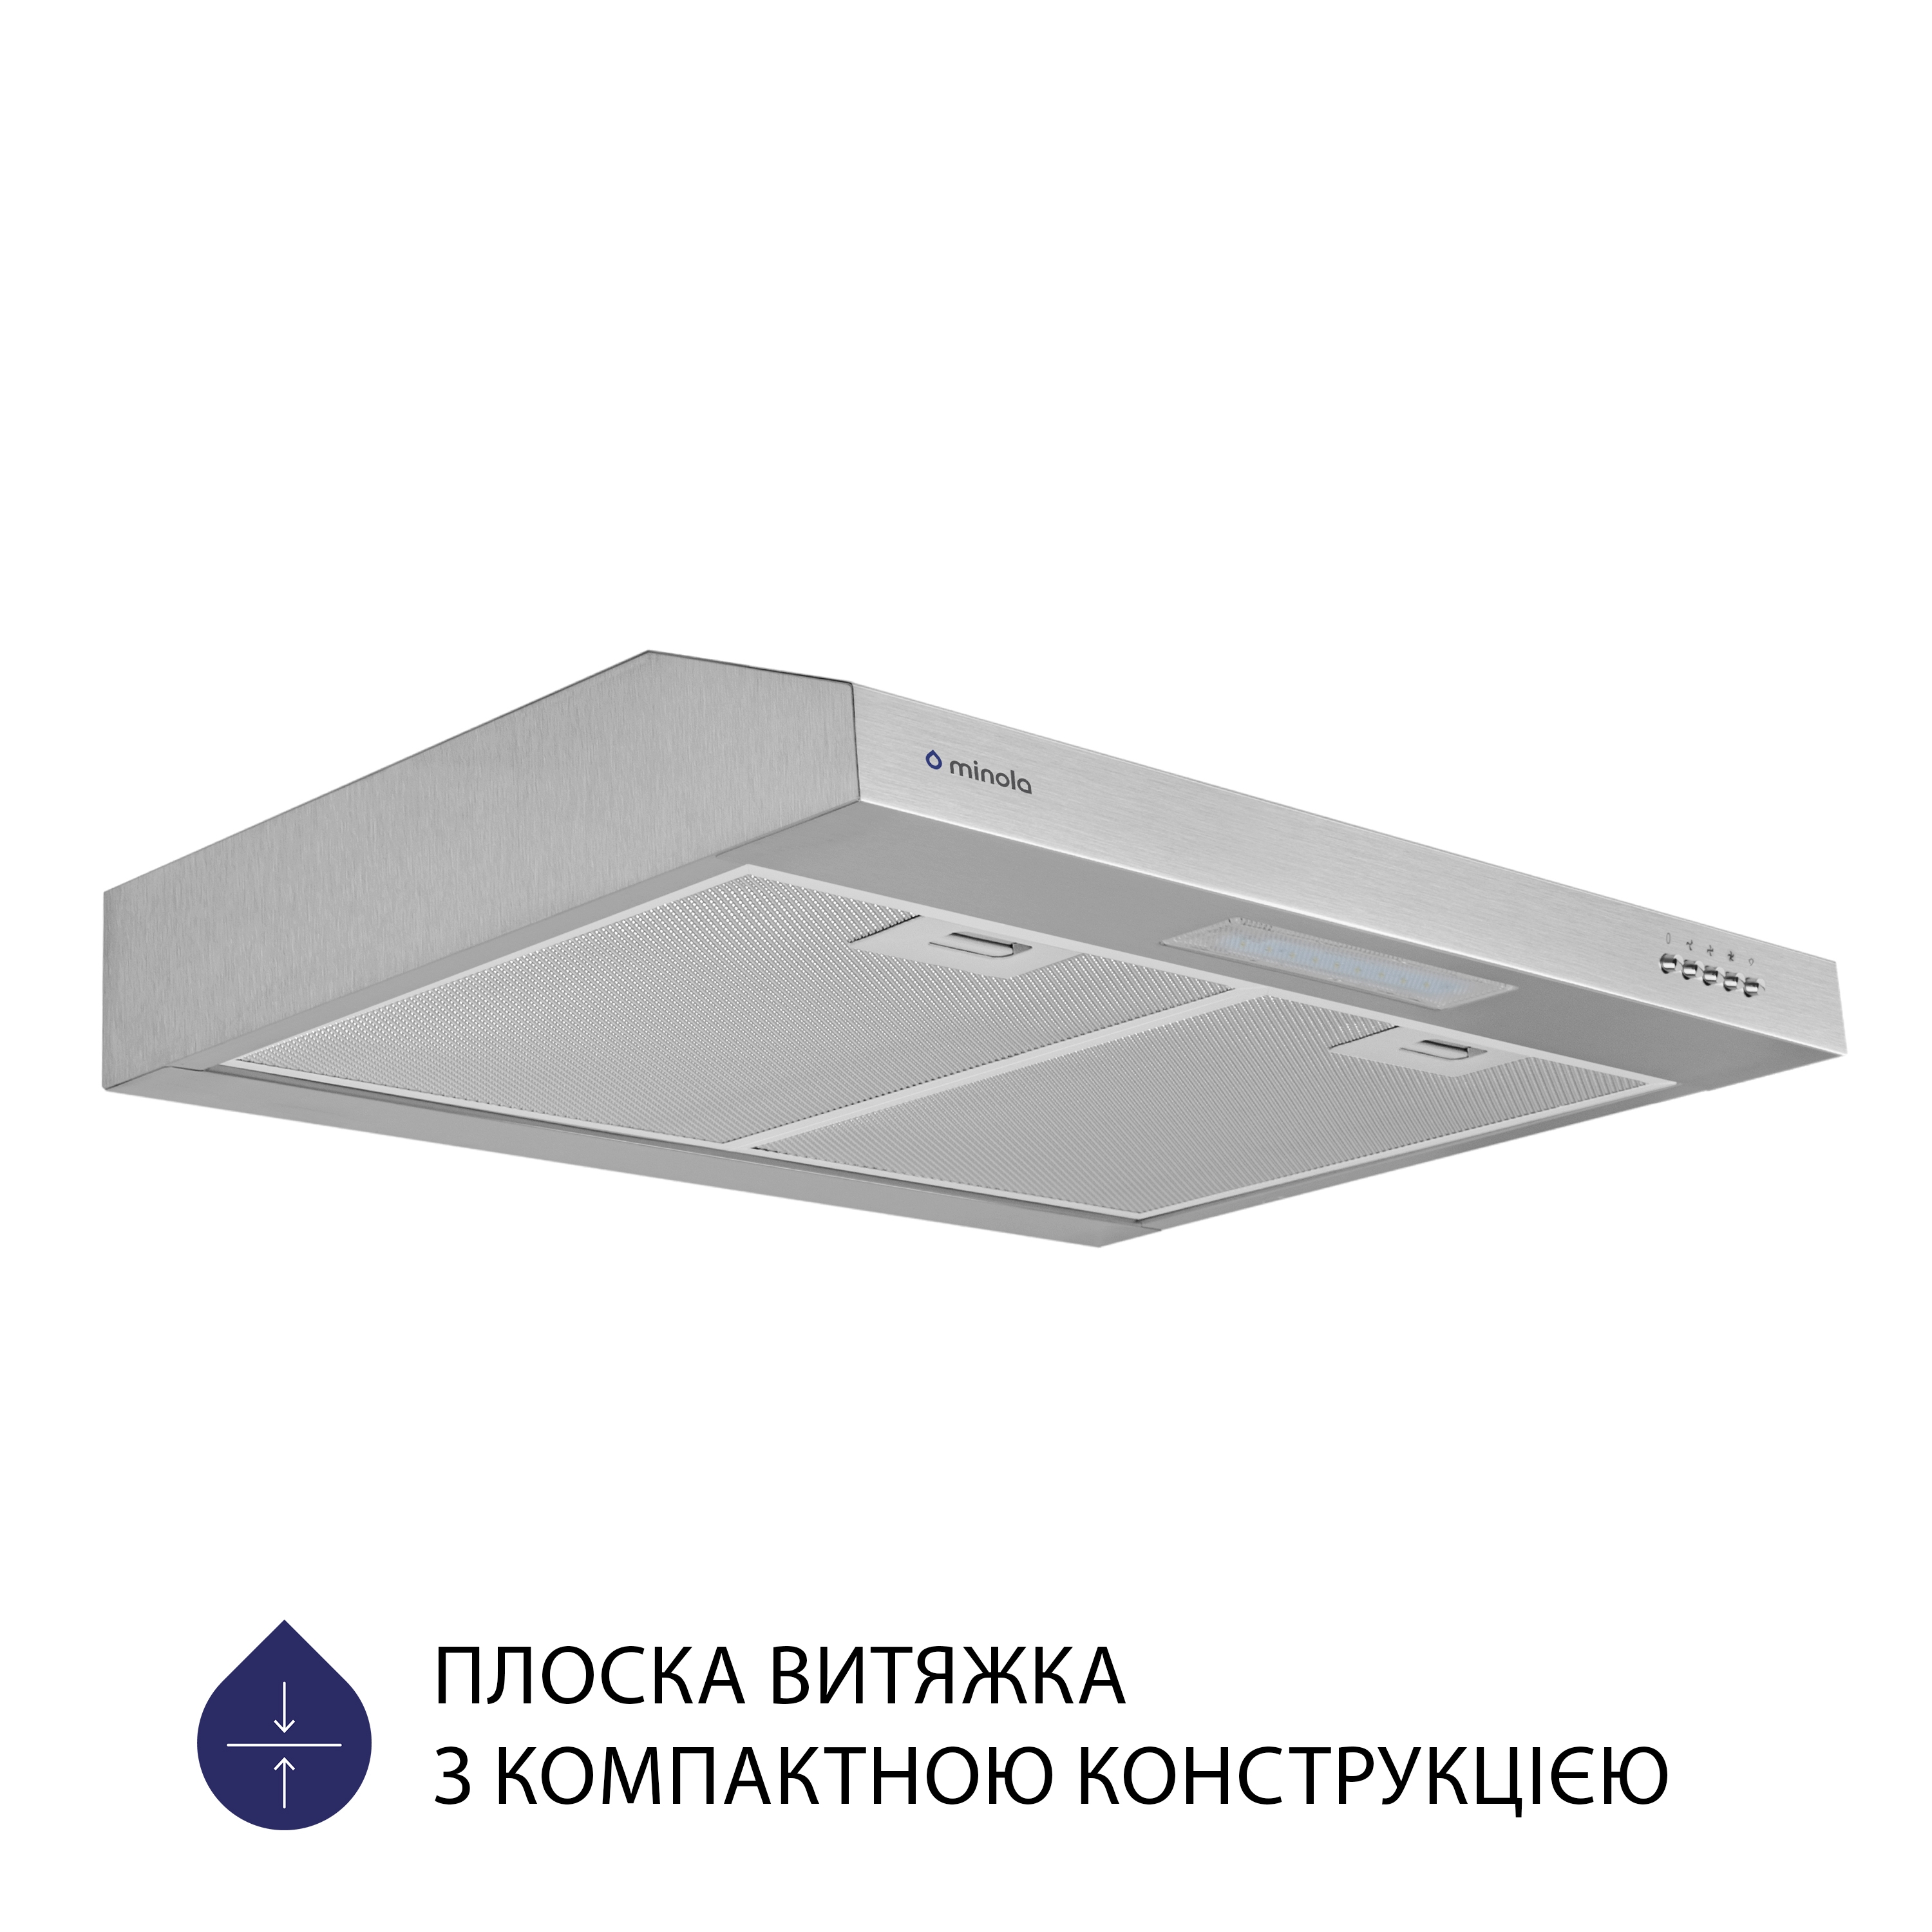 Витяжка кухонная плоская Minola HPL 612 I цена 2249.00 грн - фотография 2